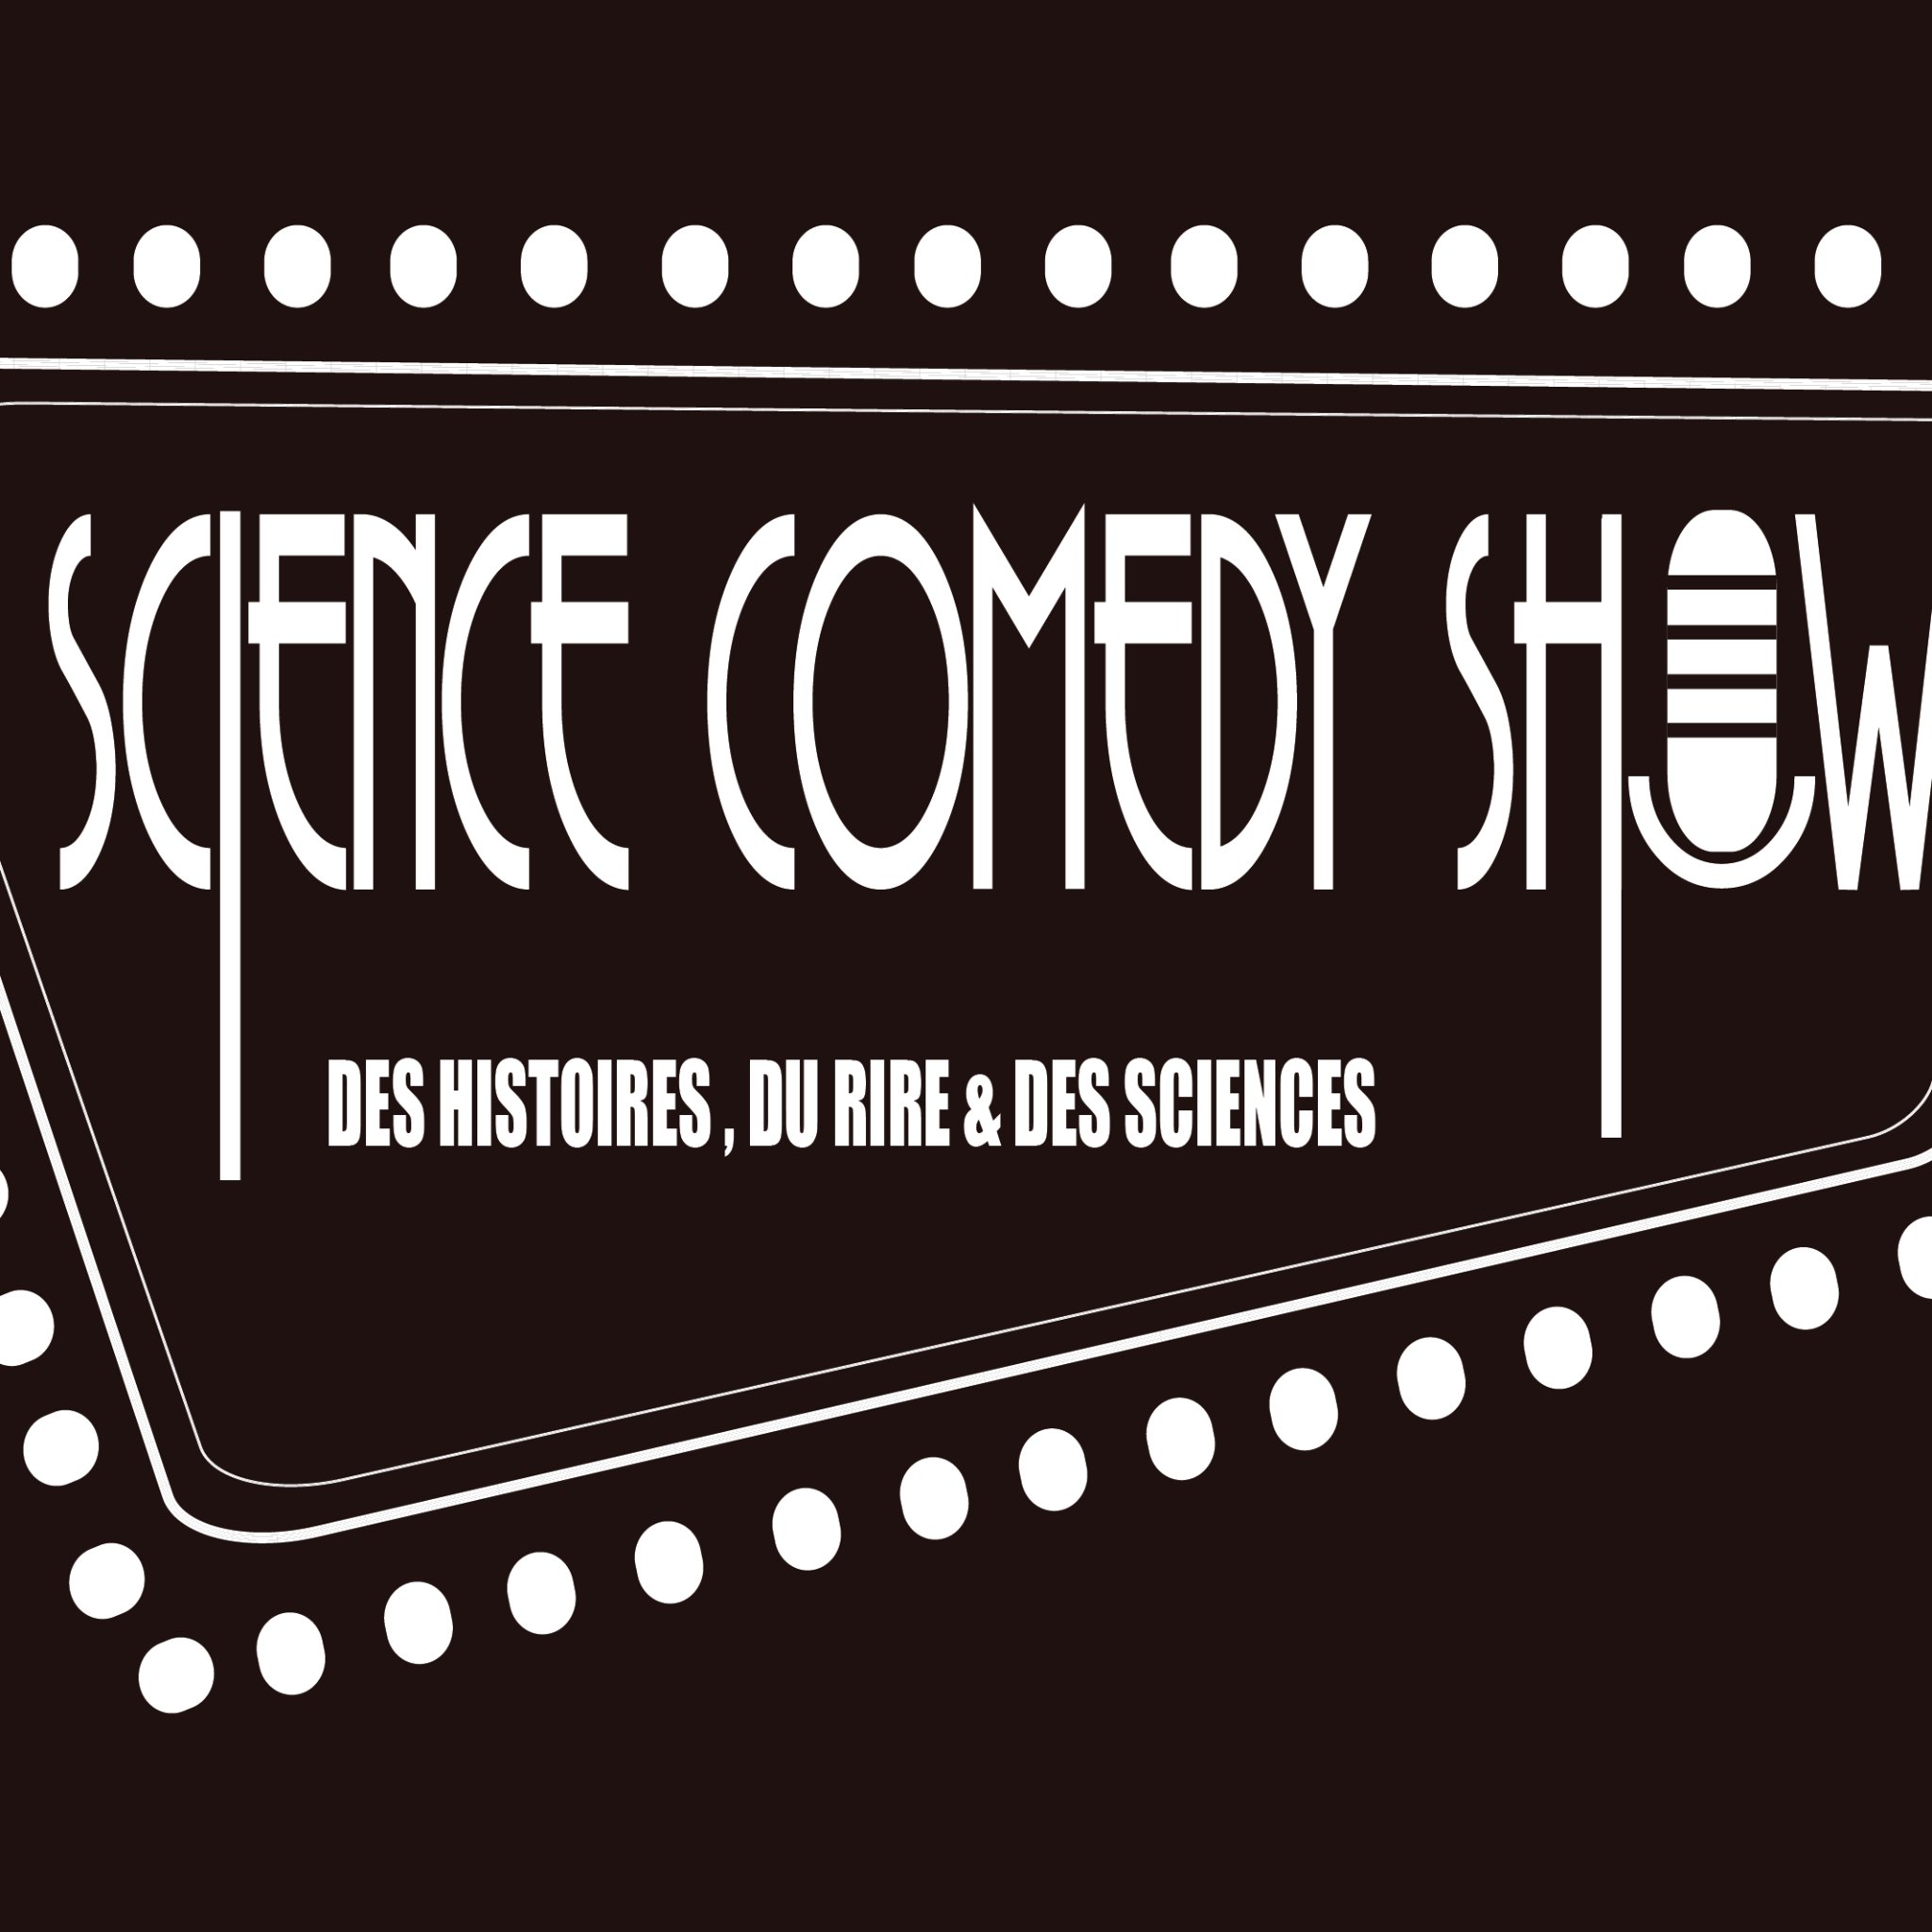 Faire rire avec les sciences 🔬! Du stand-up sous forme scientifique ! #humour